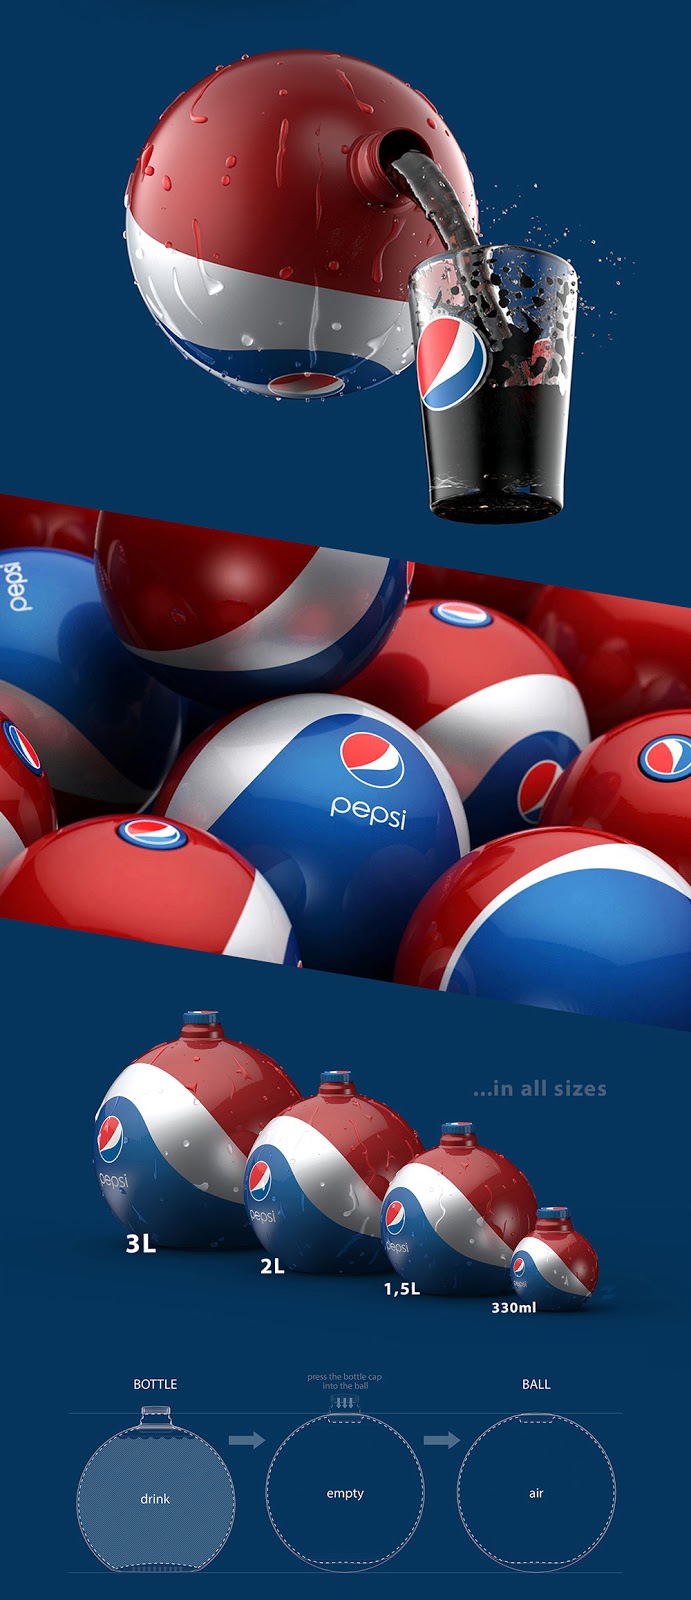 Pepsi_RubberBall_04_BottlePackaging